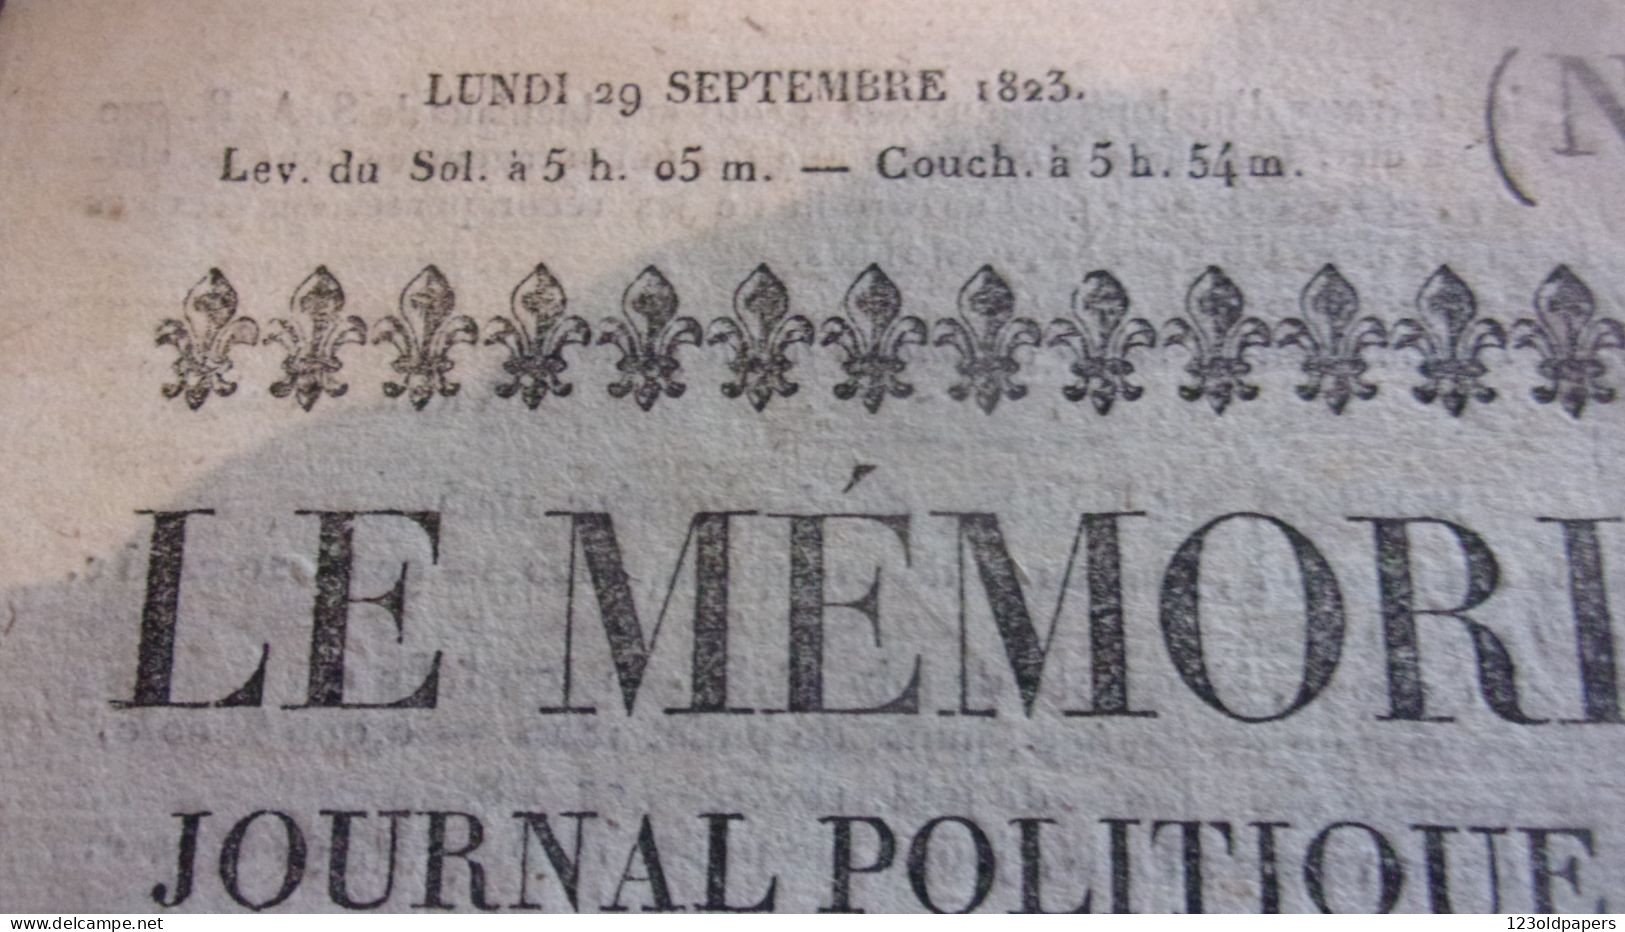 RARE 1823 LE MEMORIAL BORDELAIS JOURNAL POLITIQUE LITTERAIRE /LOUIS XVIII ROI DE FRANCE FLEUR DE LYS ROYAUTE